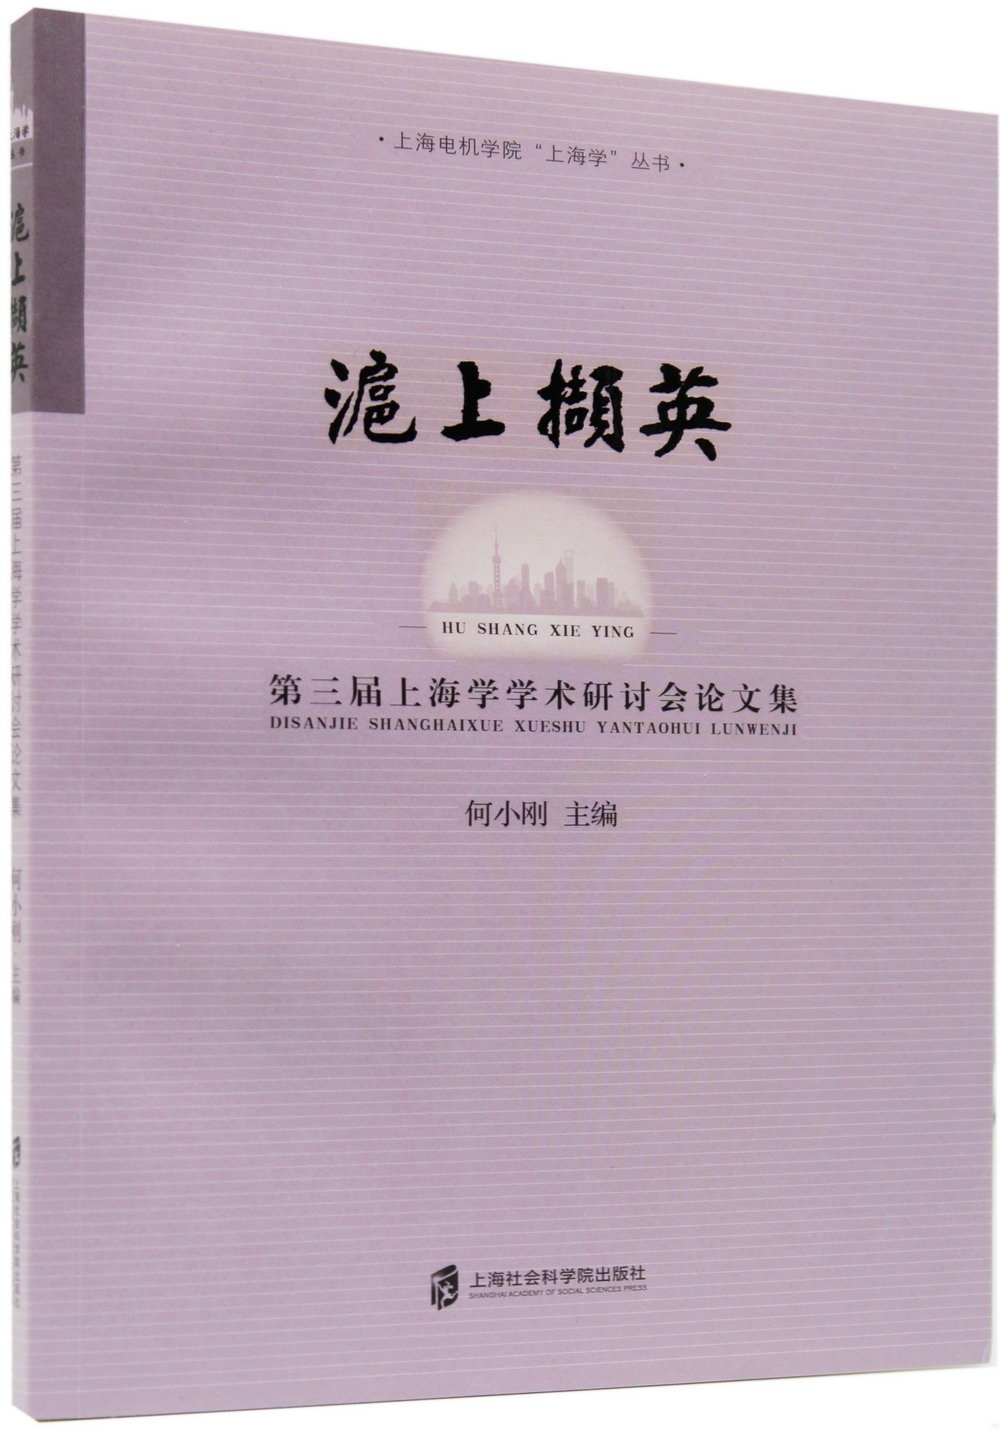 滬上擷英：第三屆上海學學術研討會論文集